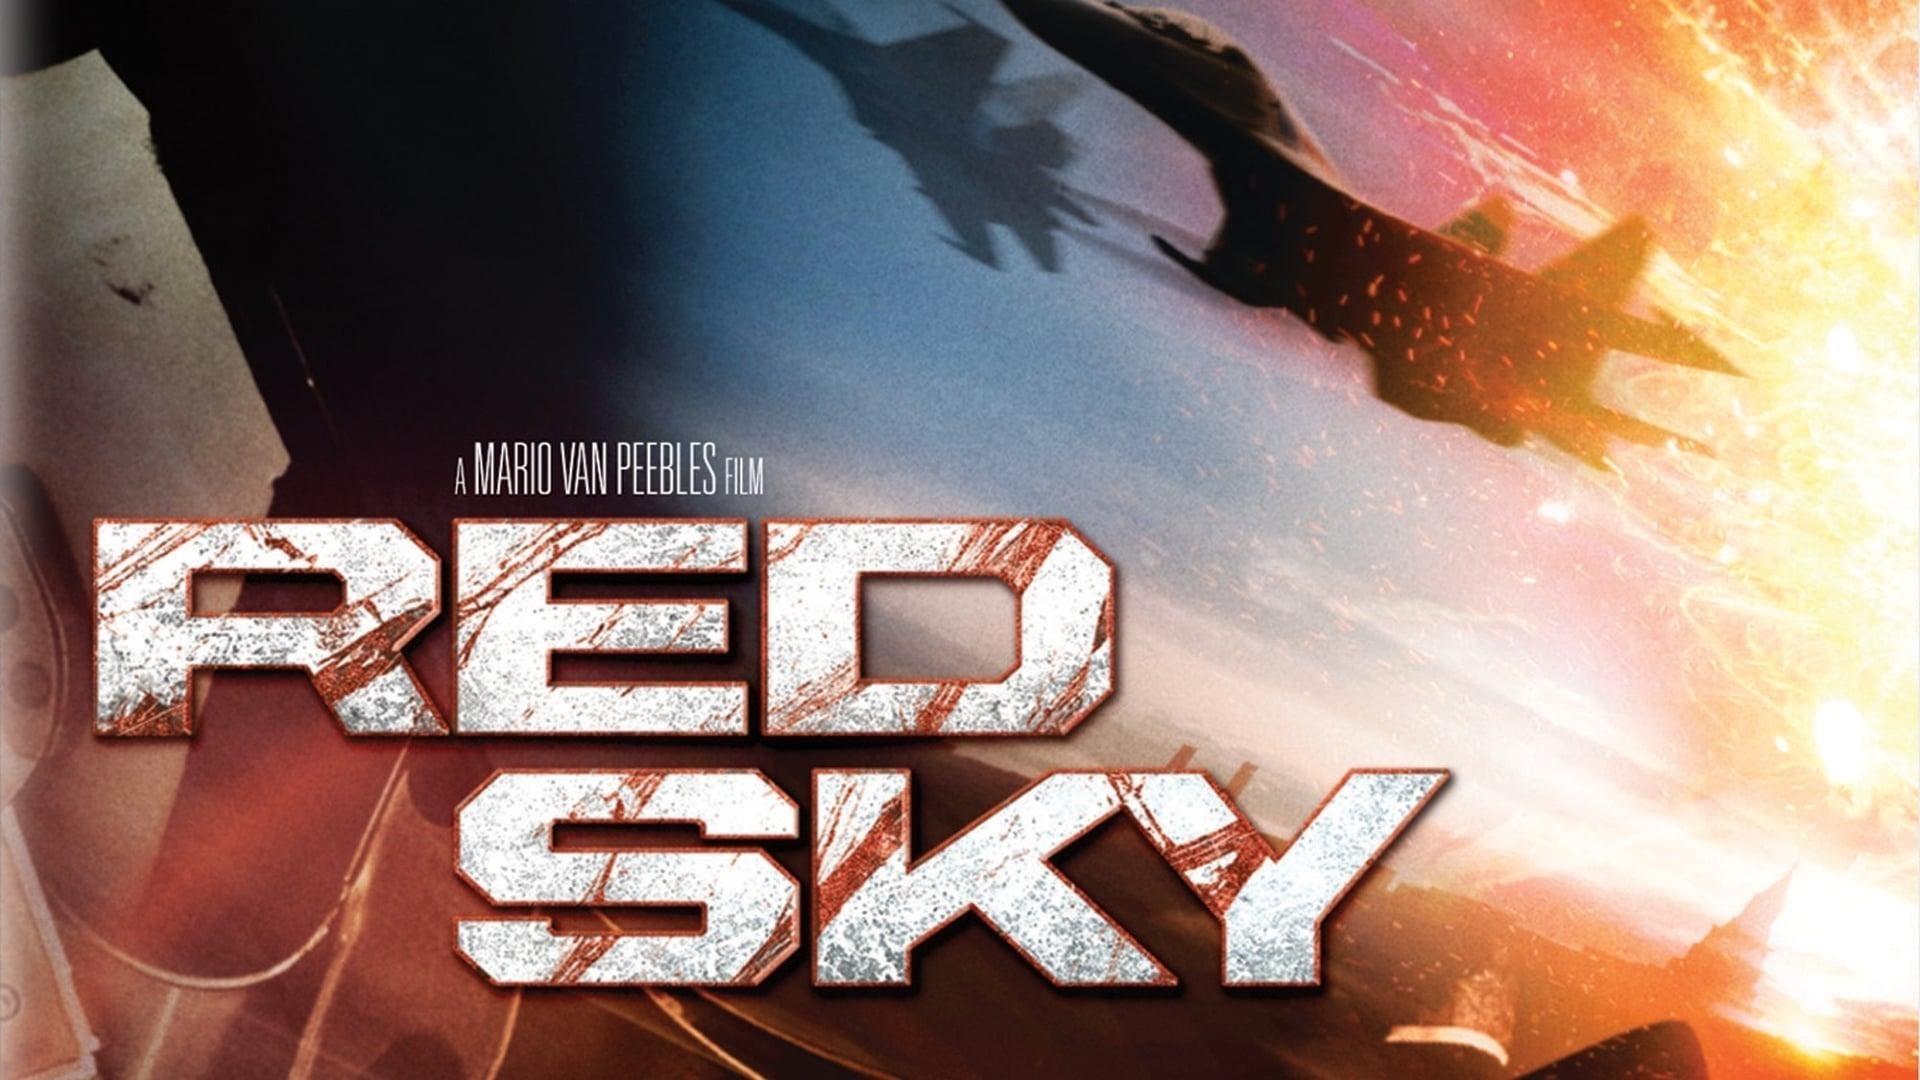 دانلود فیلم Red Sky 2014